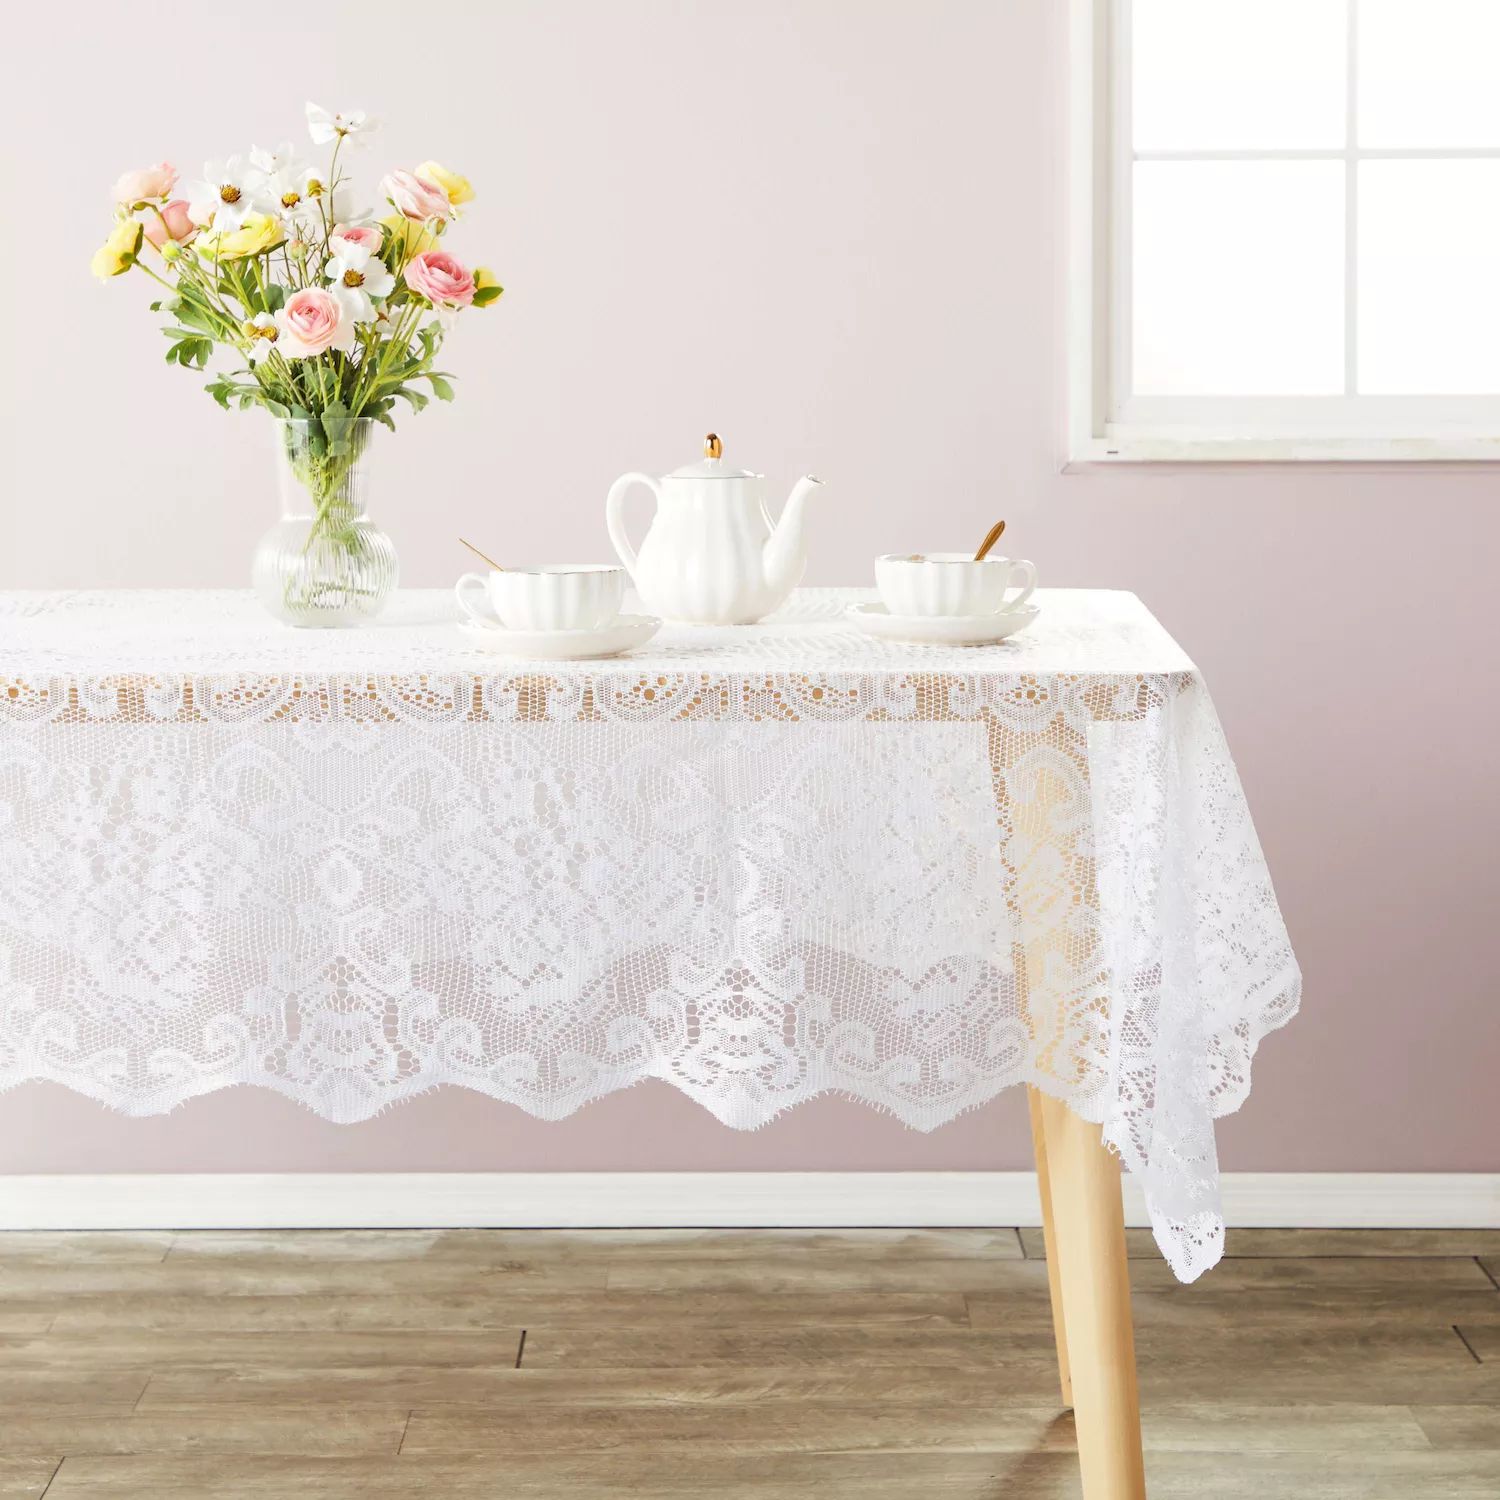 Белая кружевная скатерть для прямоугольных столов, винтажный стиль для официального ужина, званых обедов, свадеб, детского душа (60 x 97 дюймов)